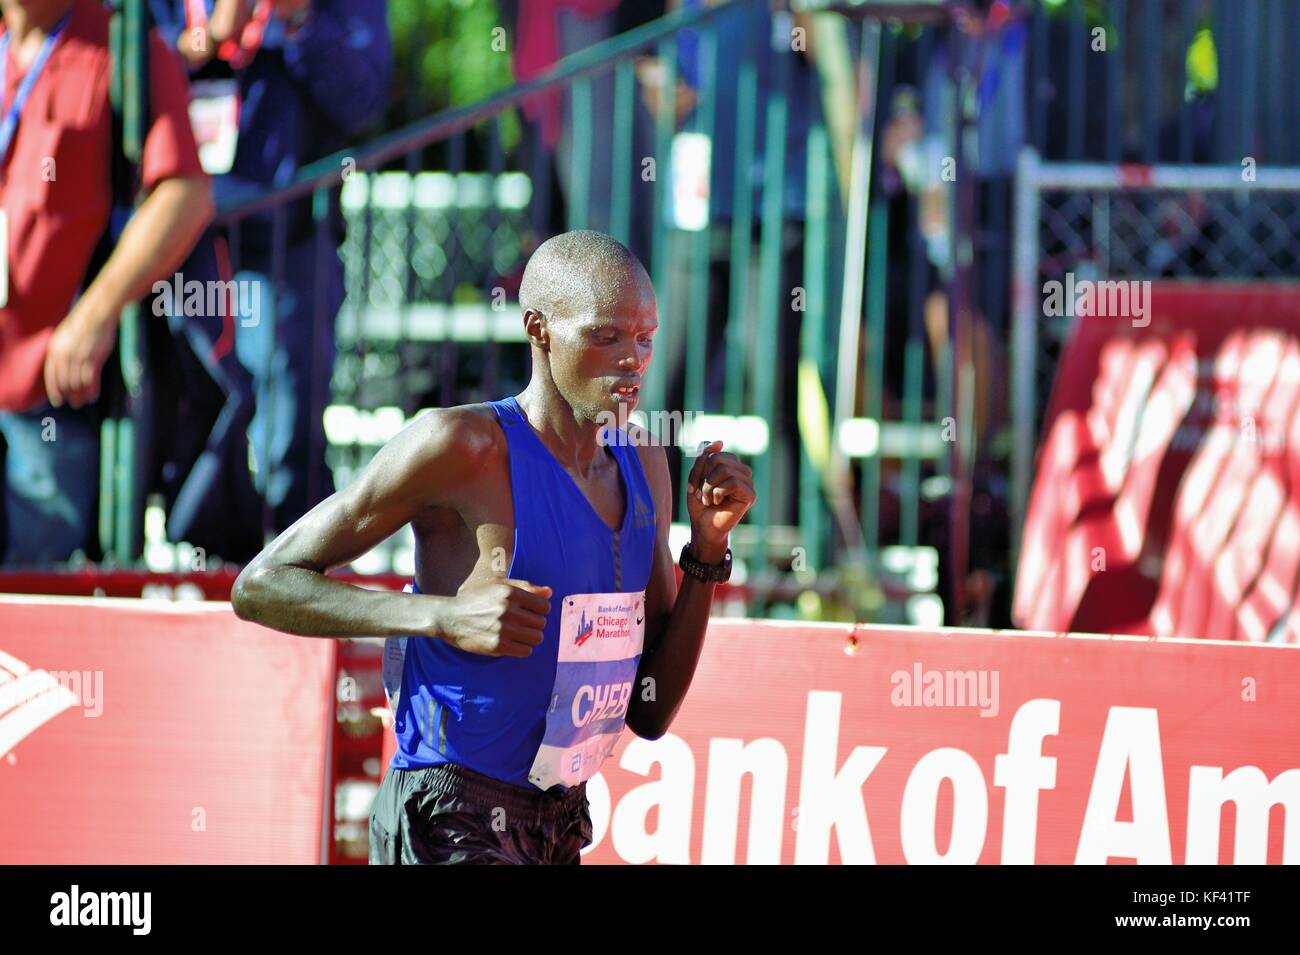 Elite runner Ezechiele Chebii del Kenya che attraversa la linea di arrivo al 2017 Maratona di Chicago. Chicago, Illinois, Stati Uniti d'America. Foto Stock